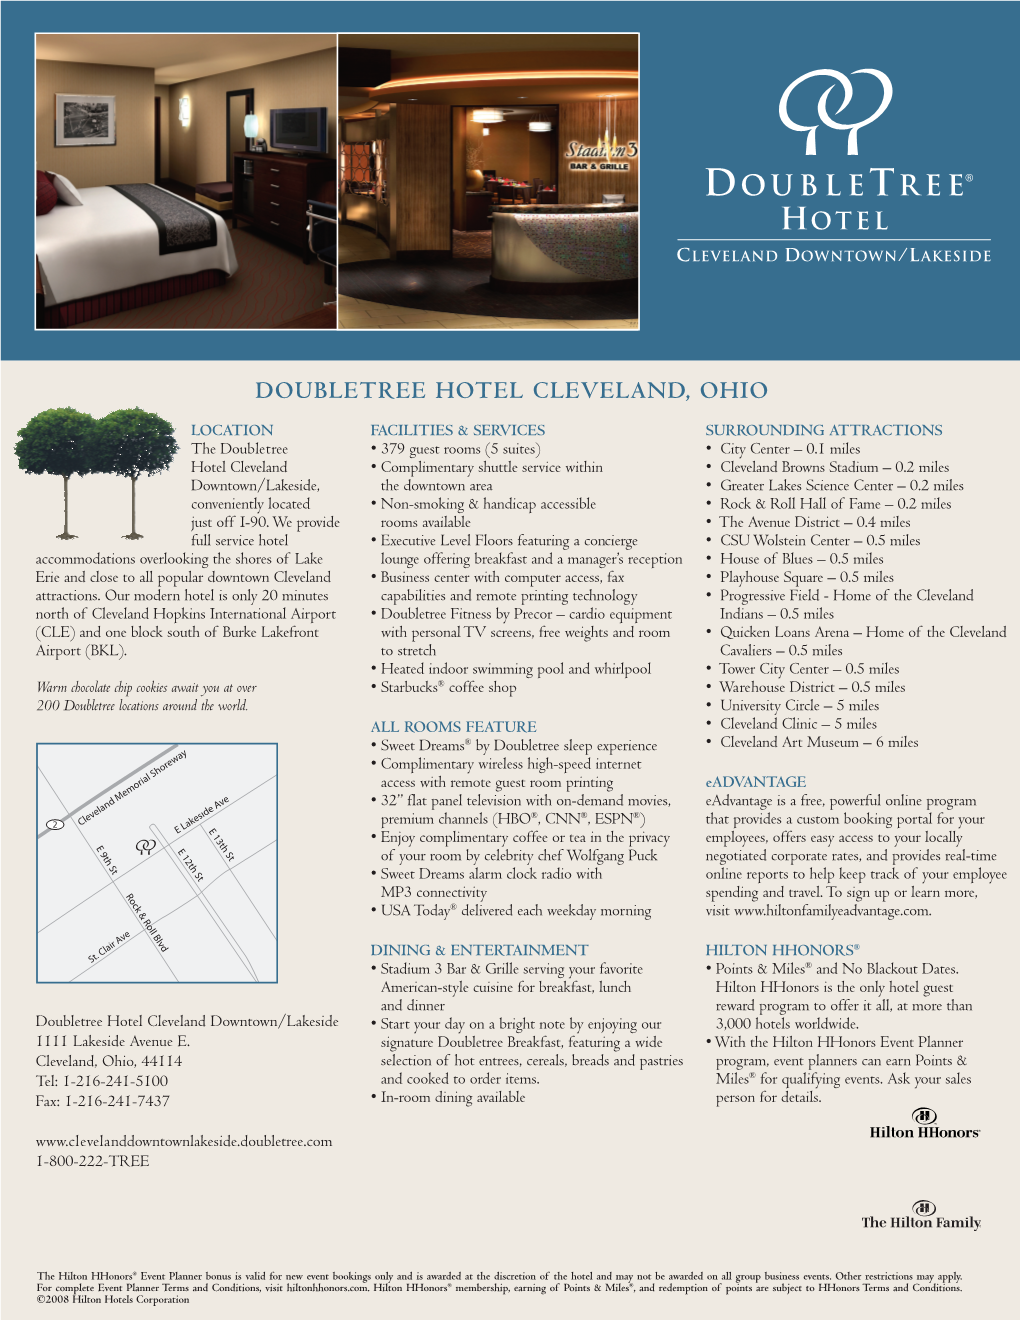 Doubletree Hotel Cleveland, Ohio